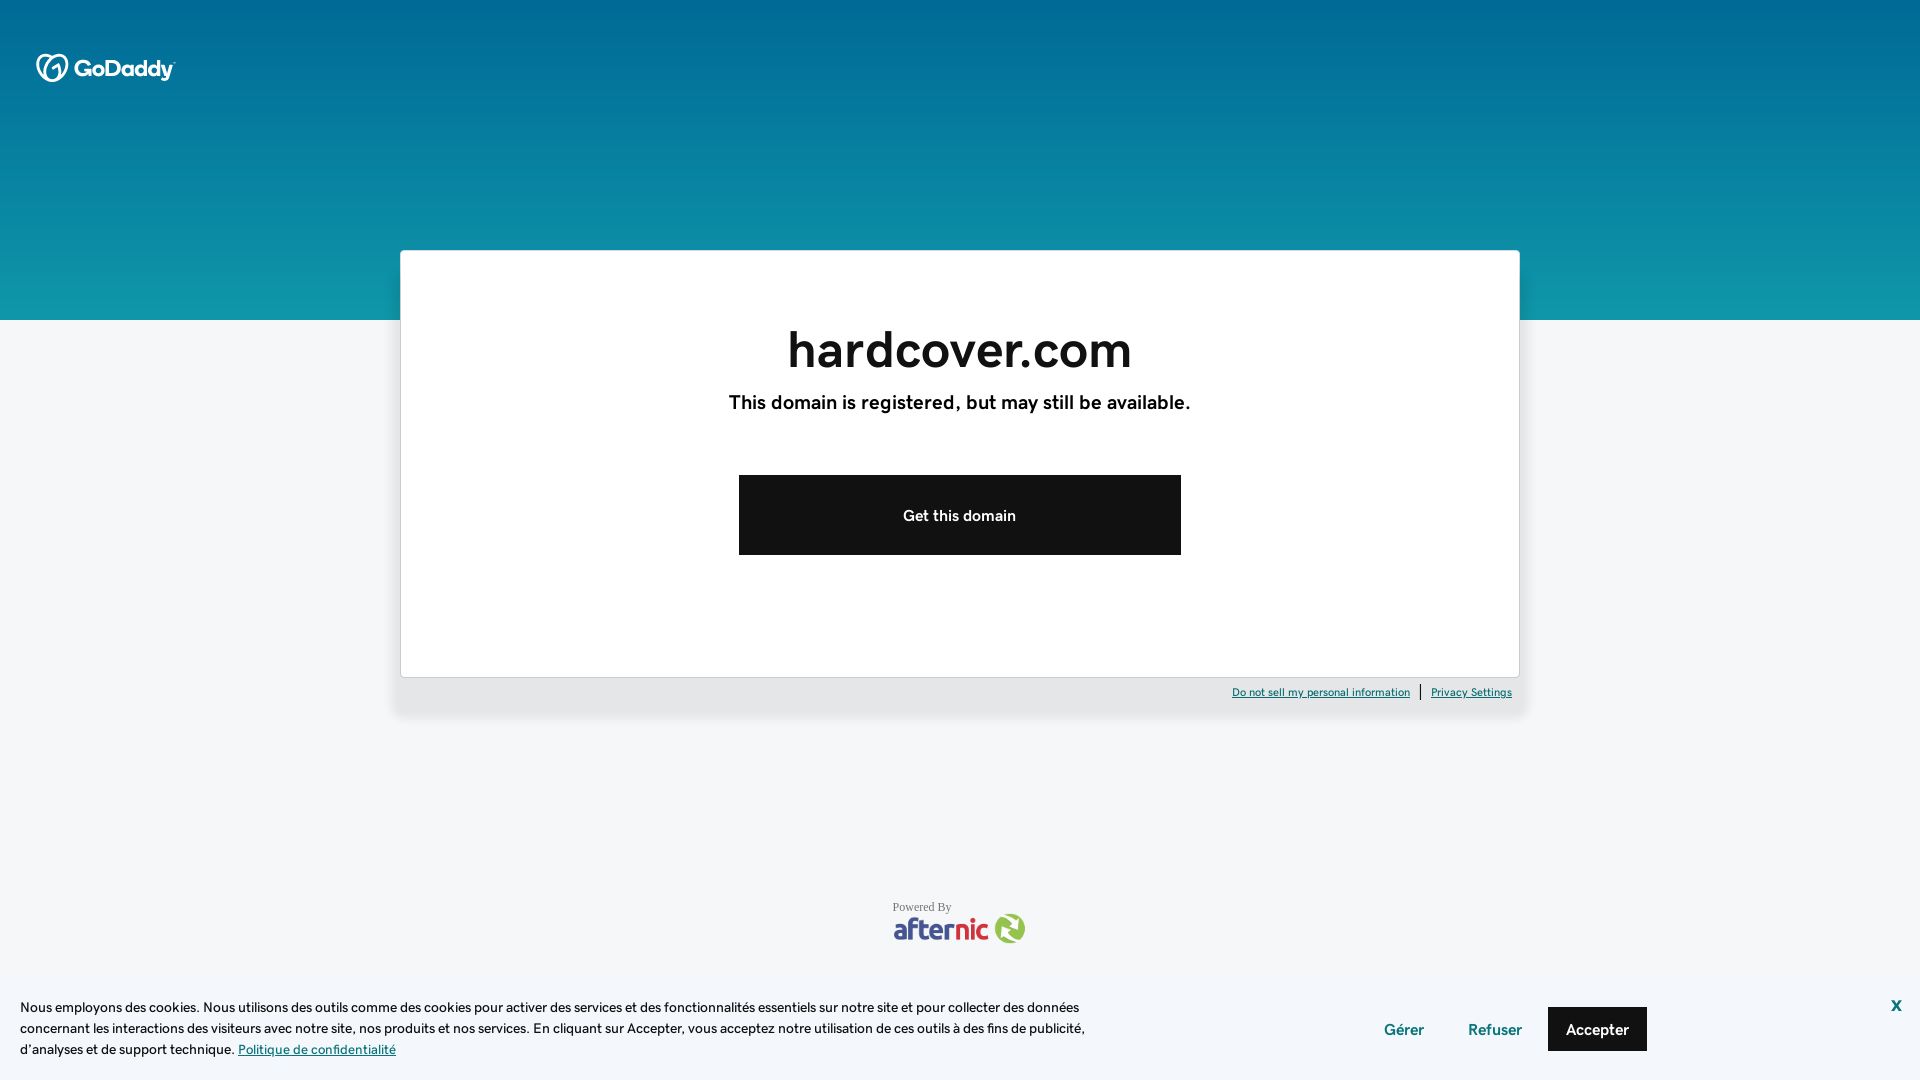 网站状态 hardcover.com 是  在线的